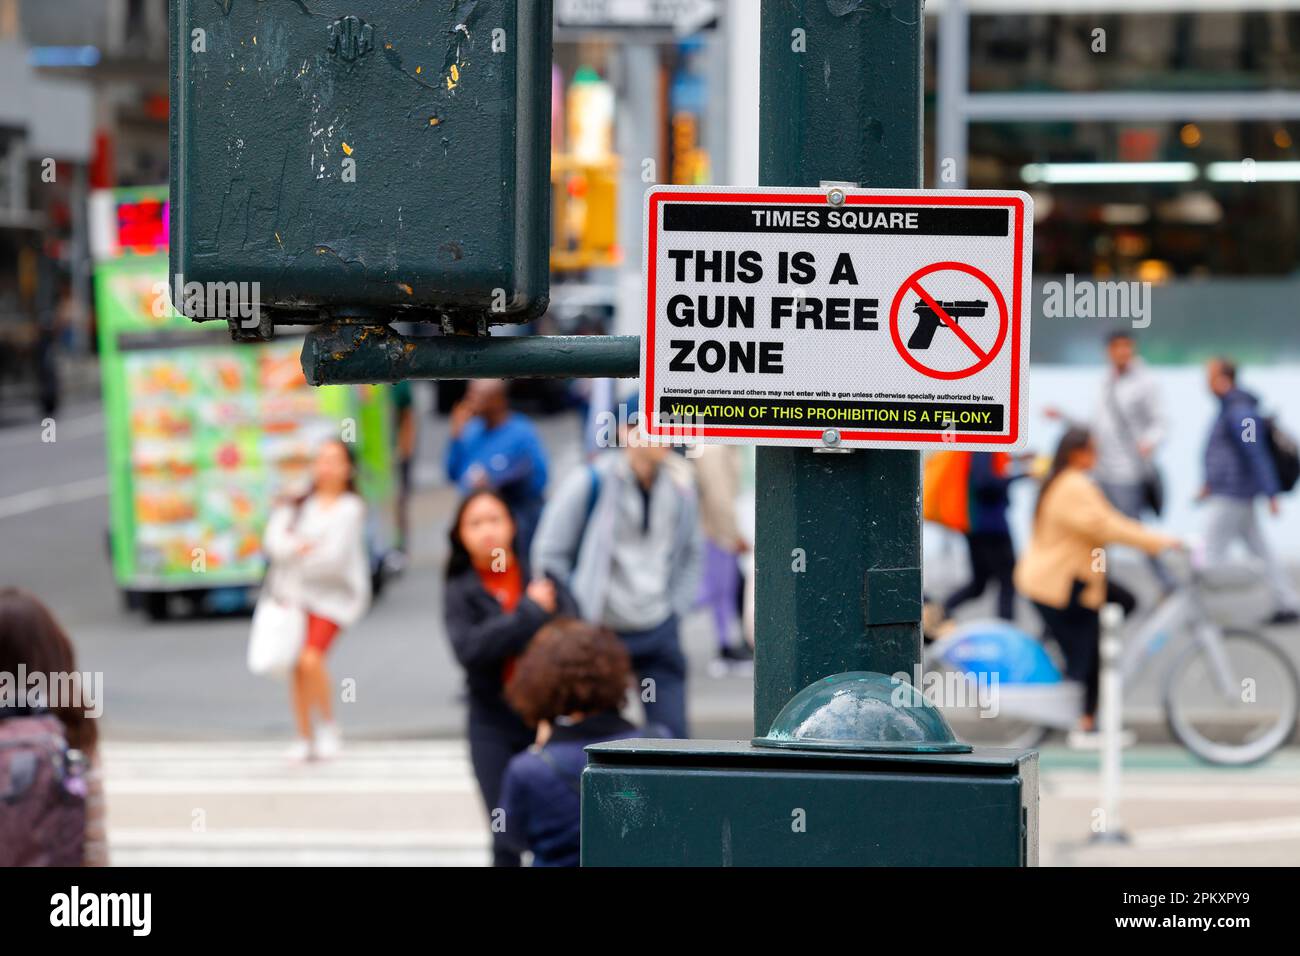 05 de abril de 2023, Nueva York, Un cartel 'Times Square Esta es una zona libre de armas' anunciando Times Square en el centro de Manhattan un área libre de armas. (ver más información) Foto de stock